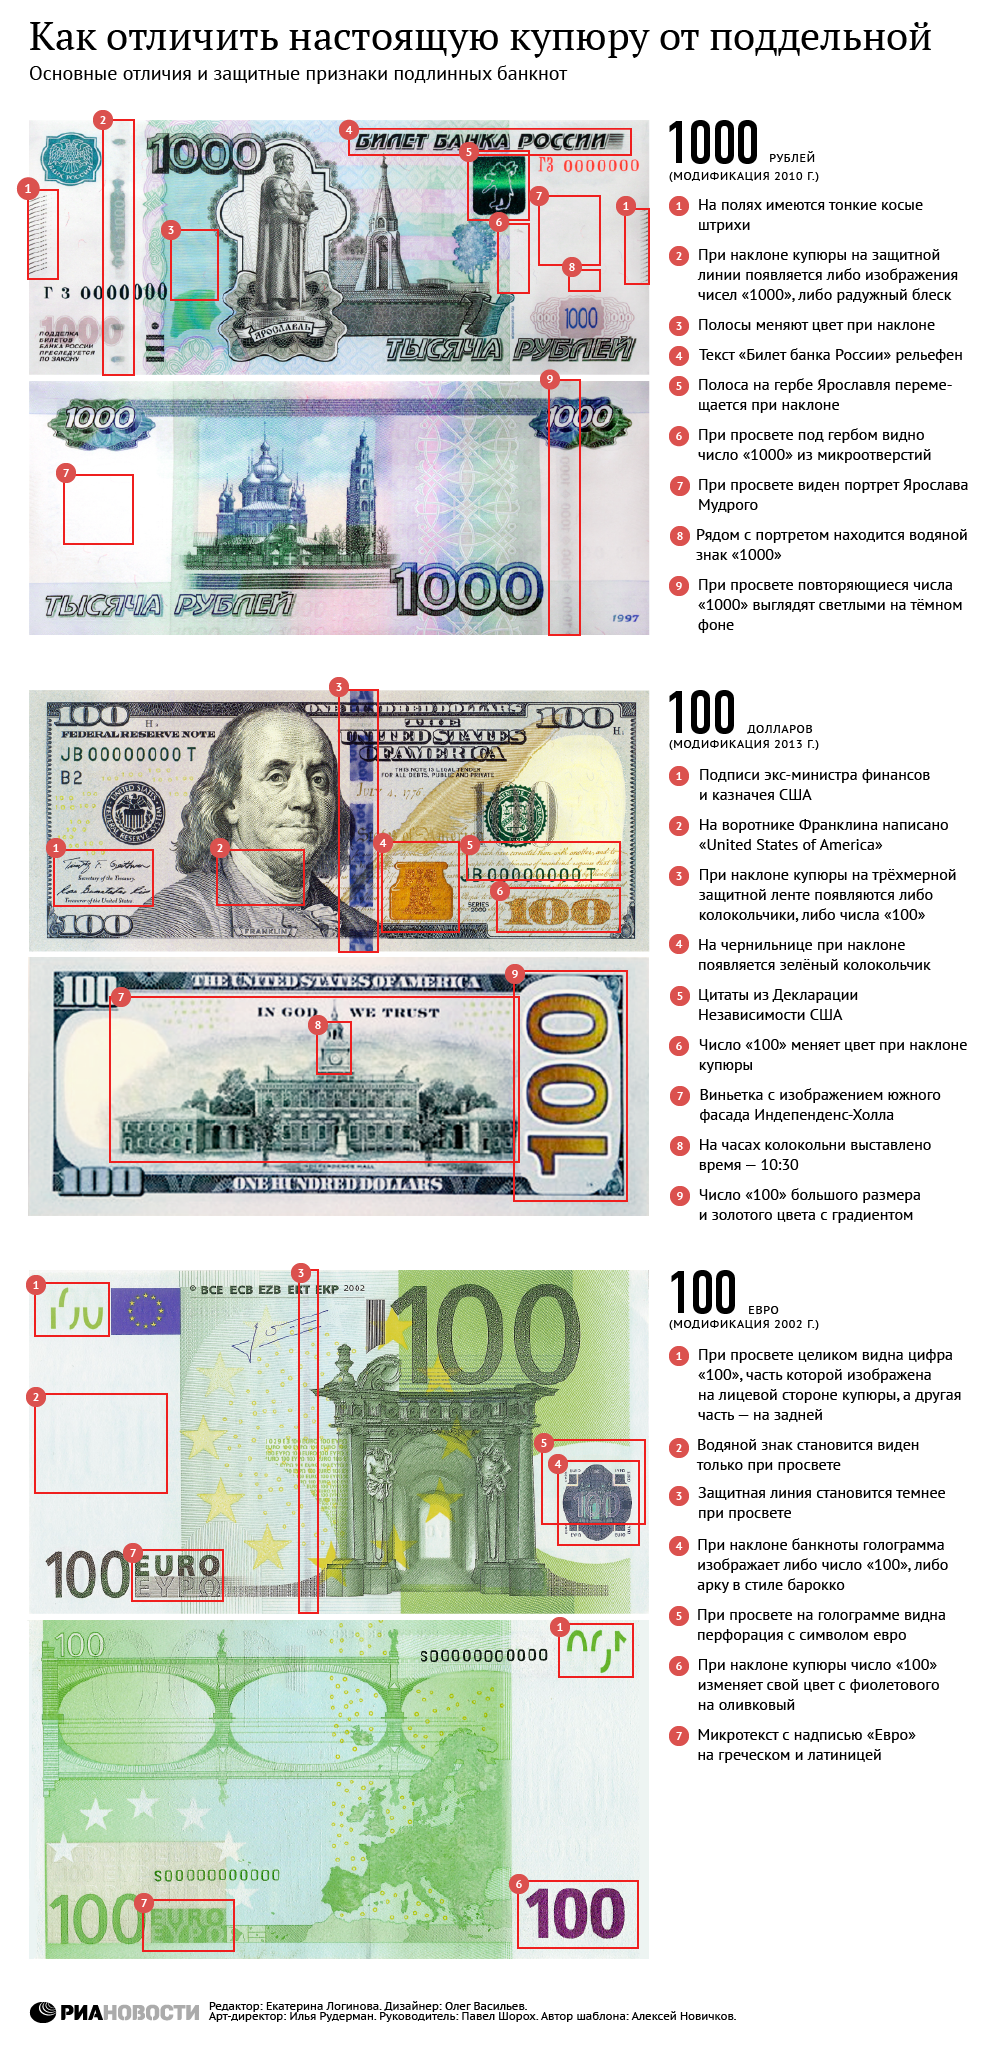 Банкноты россии признаки подлинности. Купюра 100 евро признаки подлинности. Признаки подлинности евро банкнот. Как распознать фальшивую купюру. Как отличить поддельную купюру.